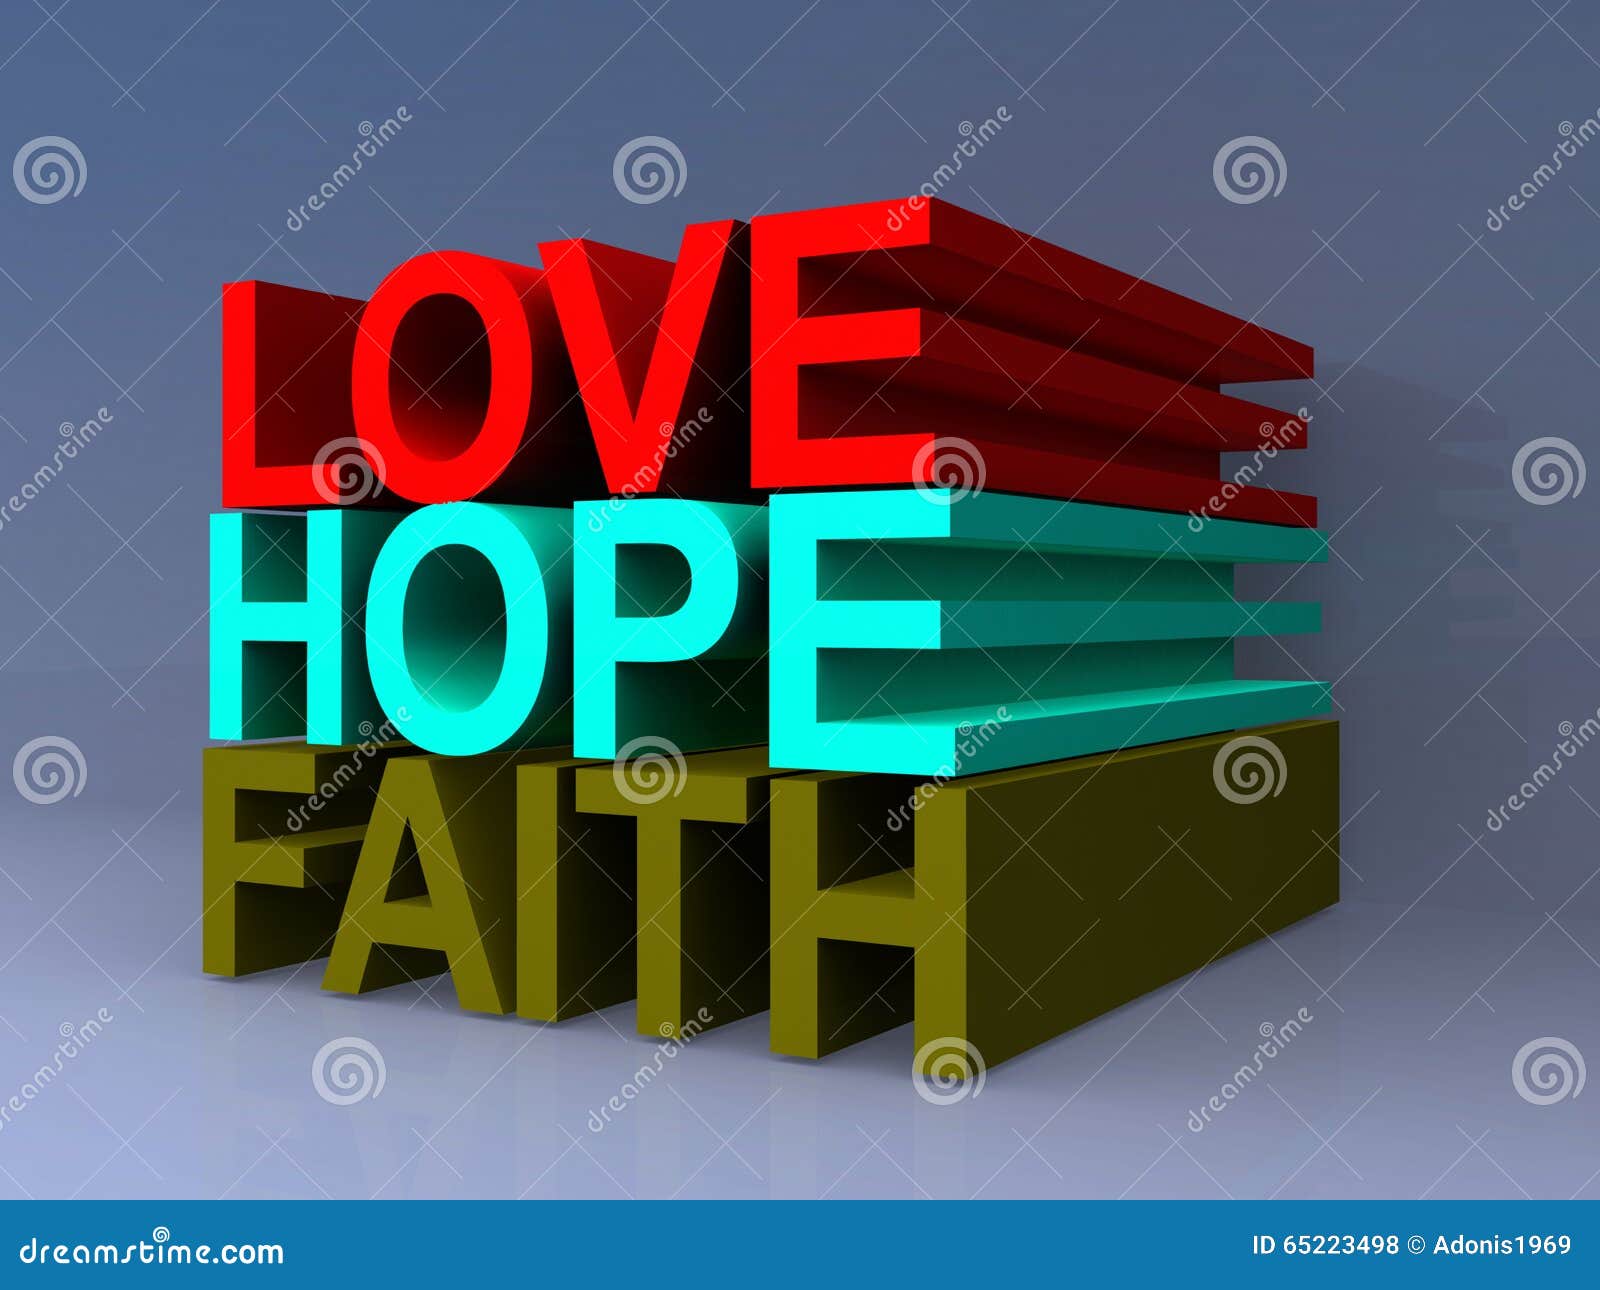 Love, hope and faith stock illustration. Illustration of faith ...